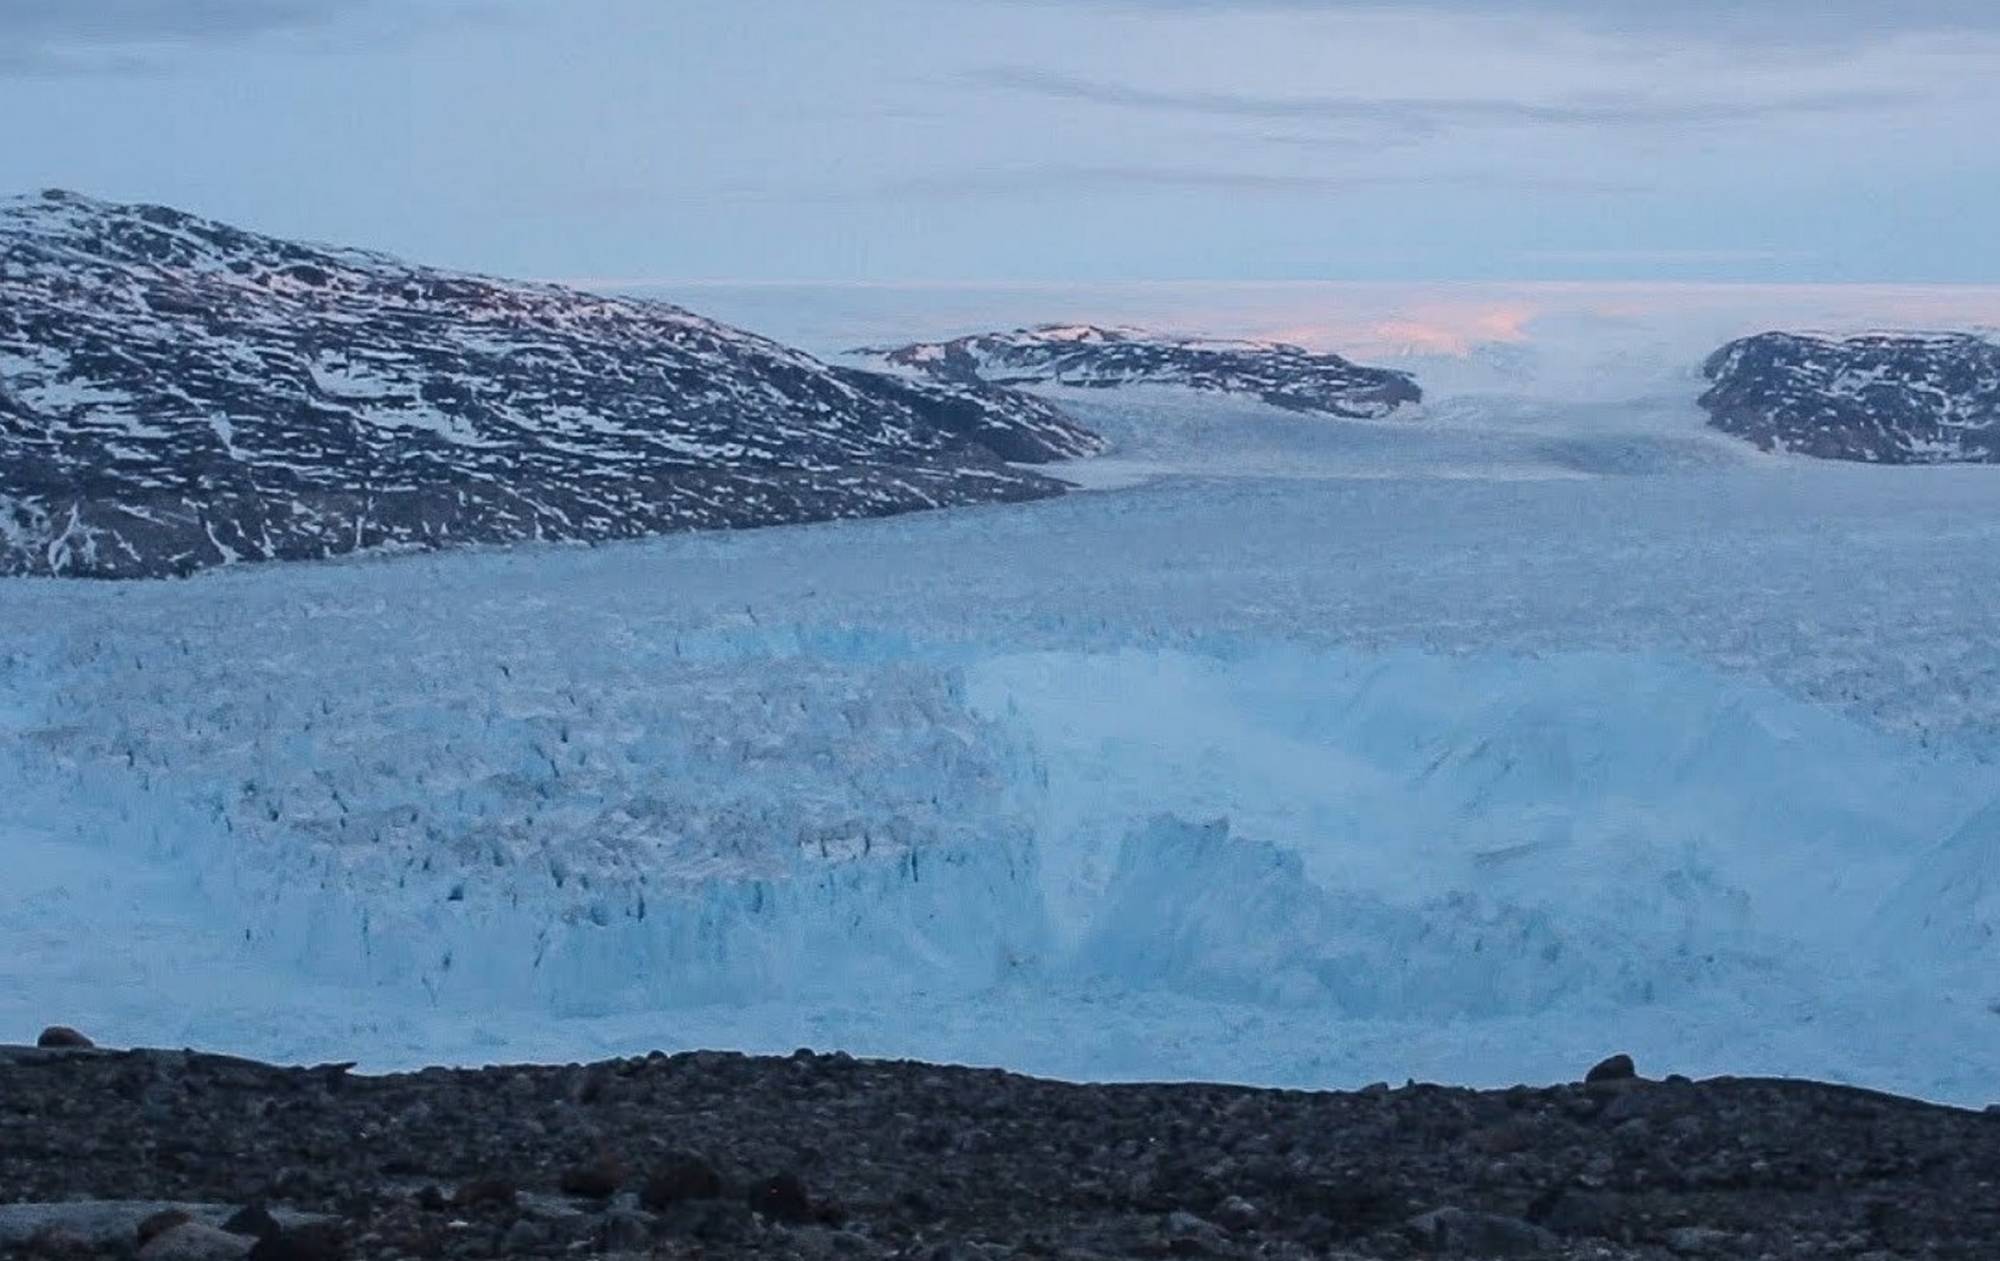 4-mile Iceberg breaking in Greenland